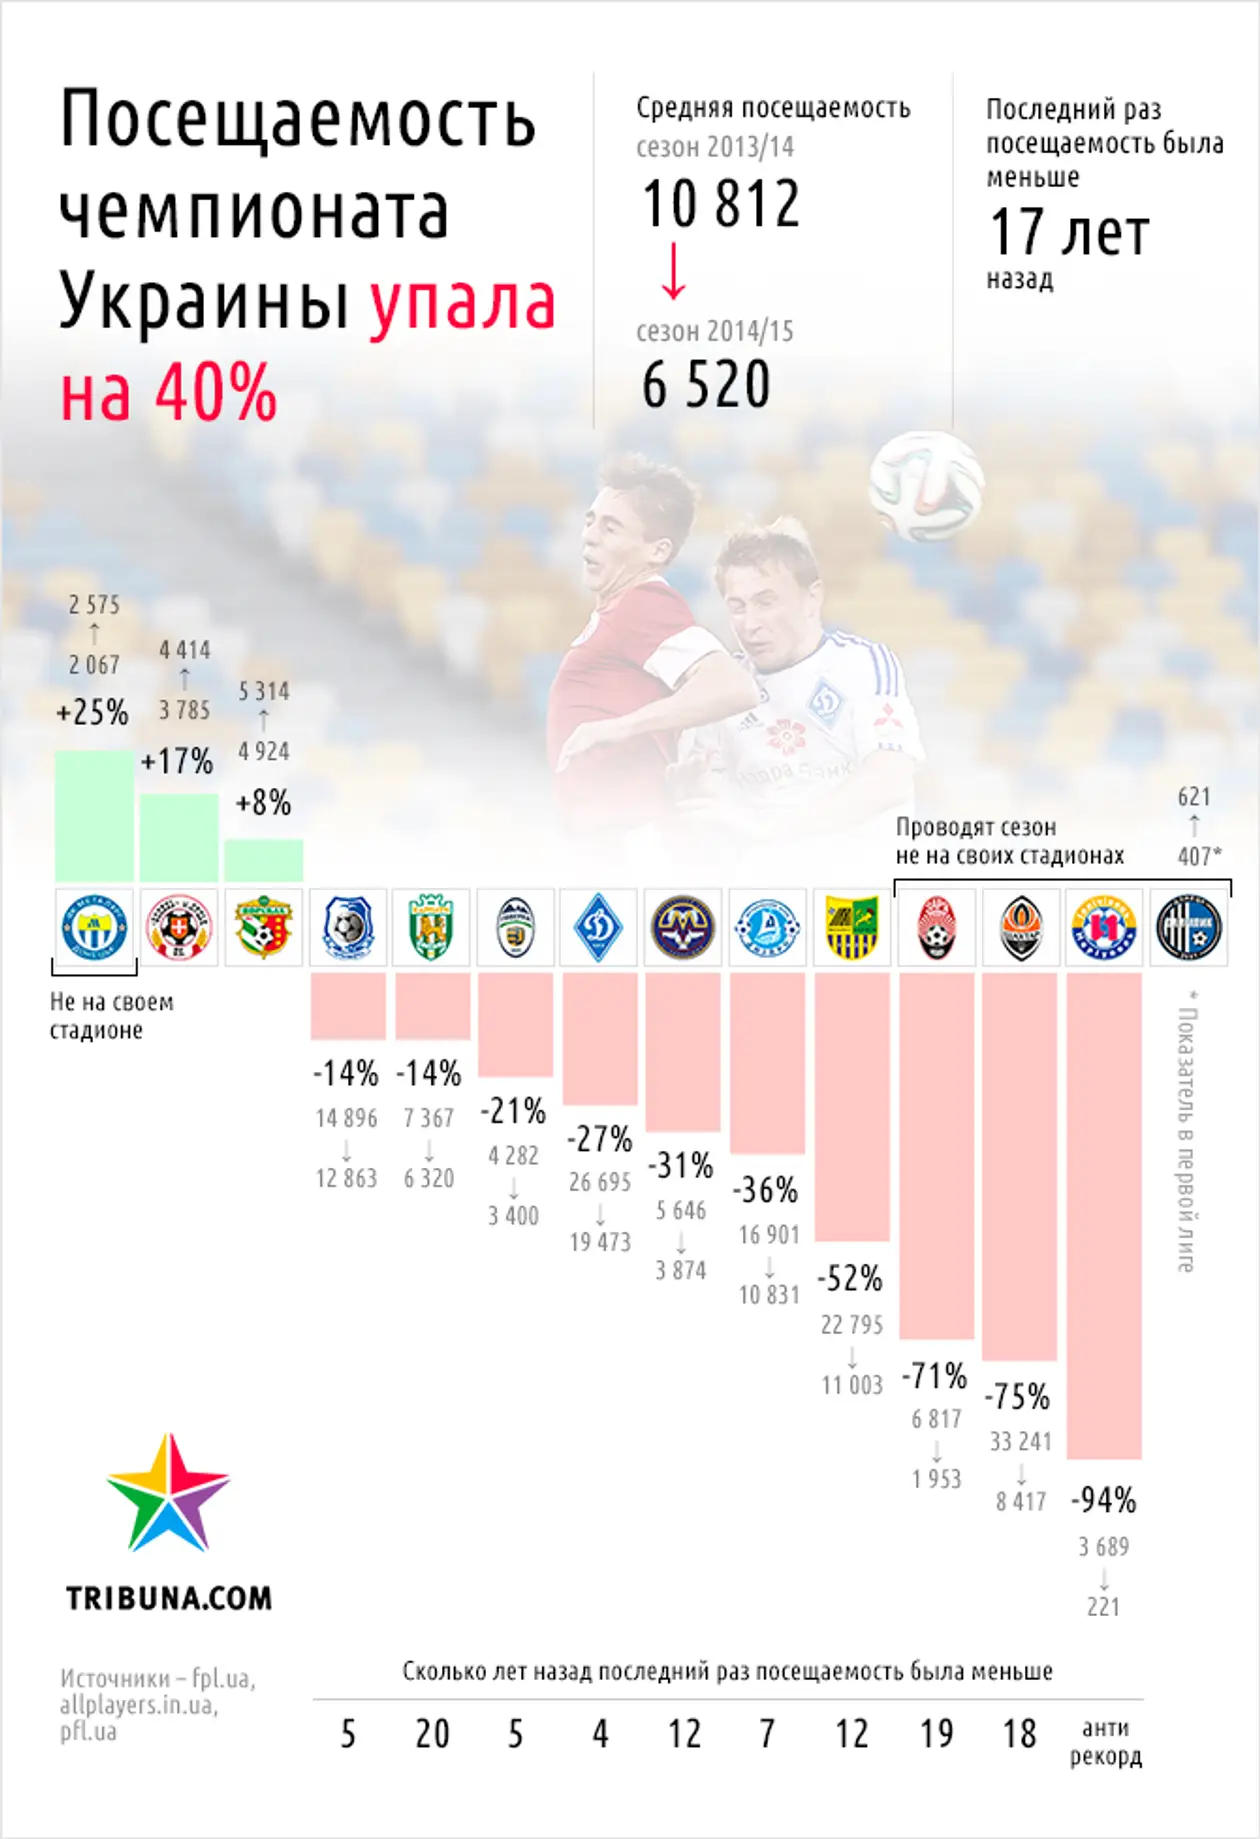 Как упала посещаемость чемпионата Украины. Инфографика Tribuna.com